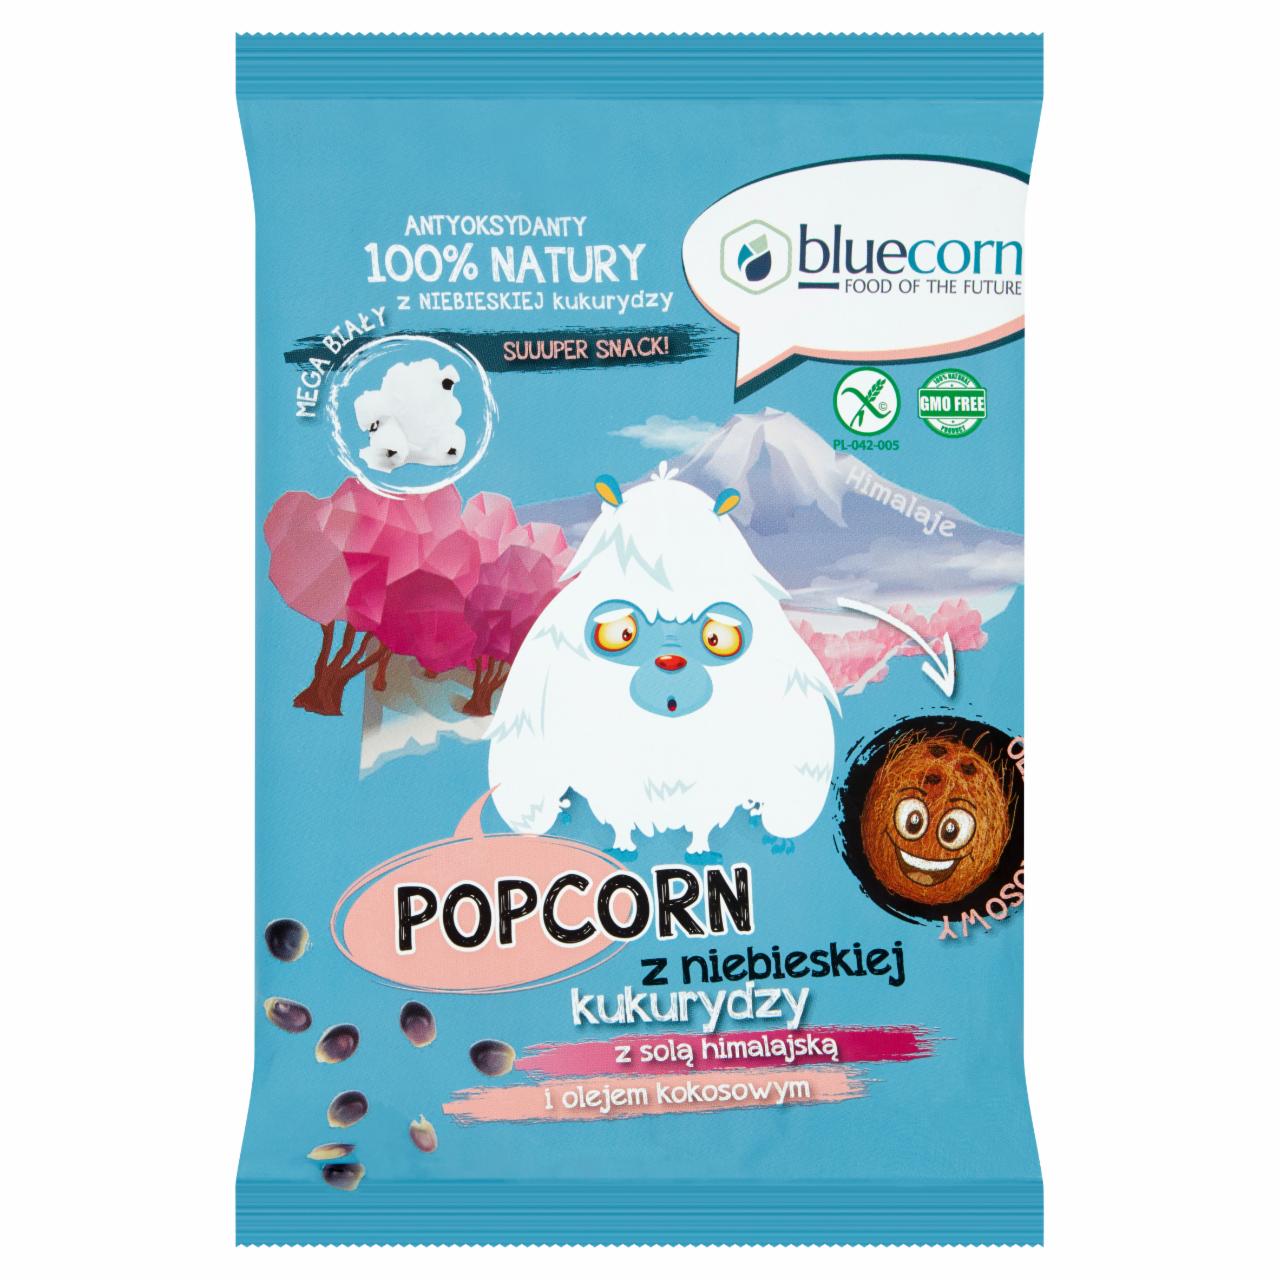 Zdjęcia - Bluecorn Popcorn z niebieskiej kukurydzy 50 g